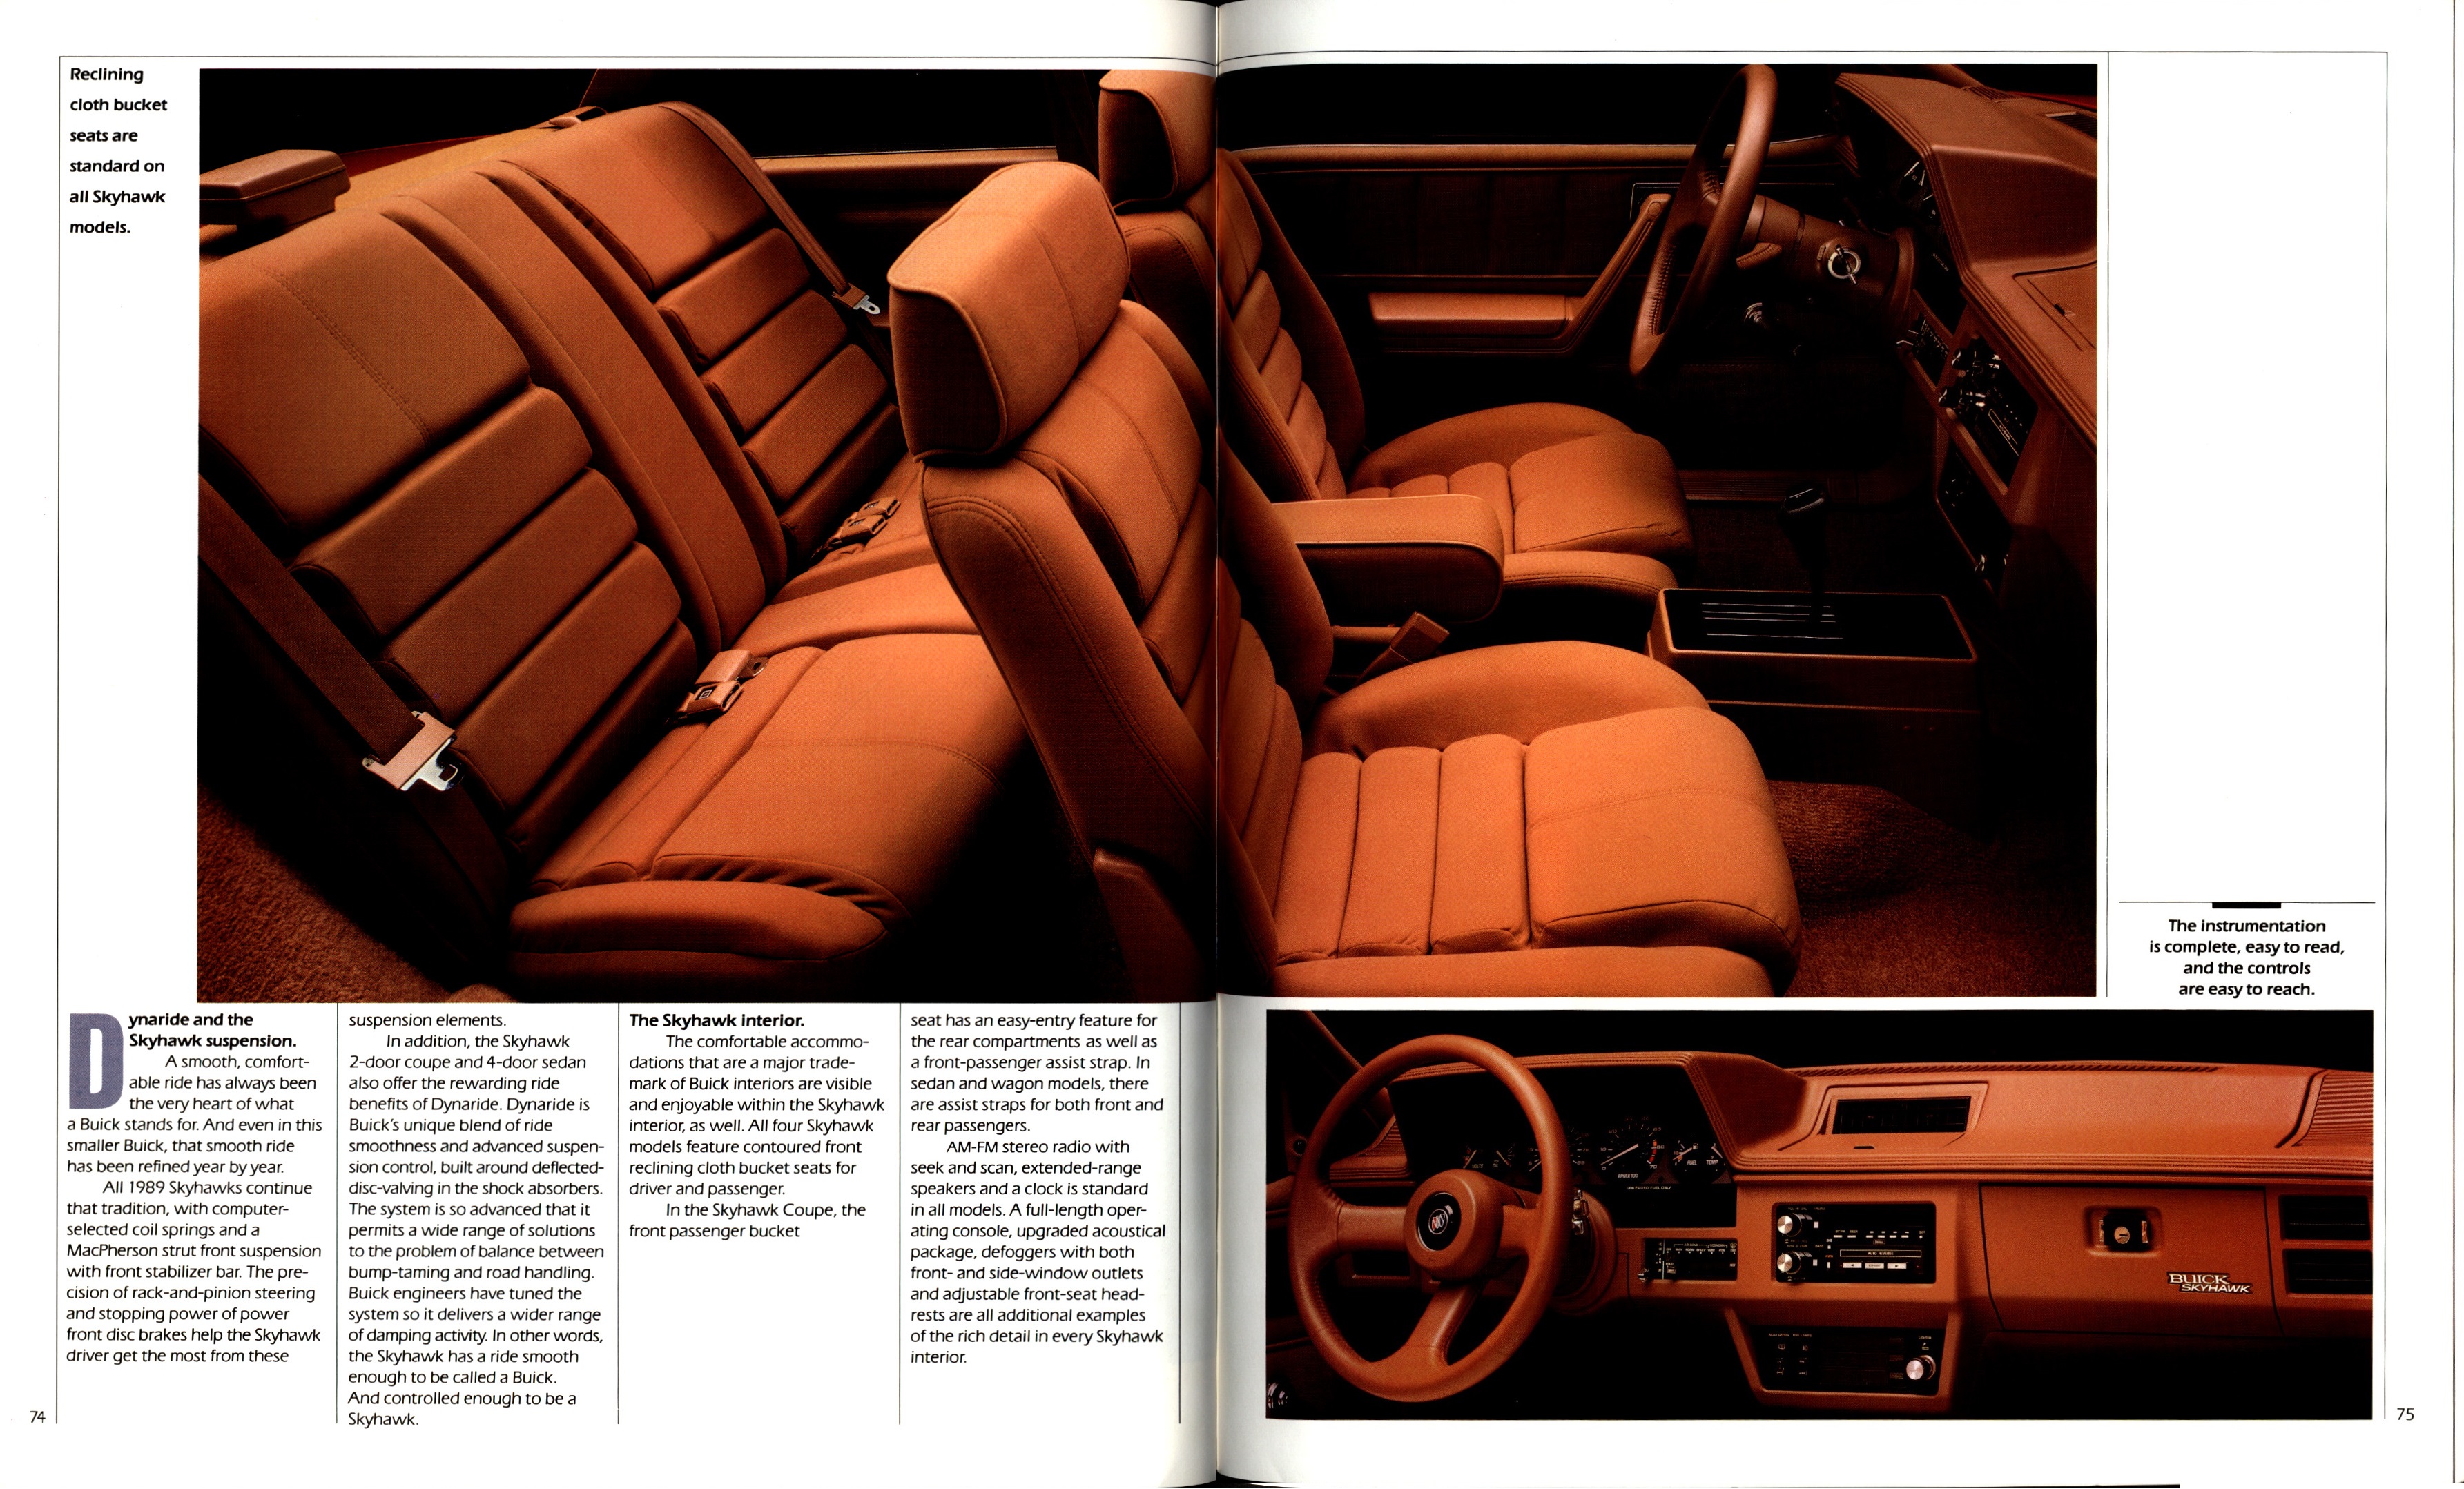 1989 Buick Full Line Prestige-74-75